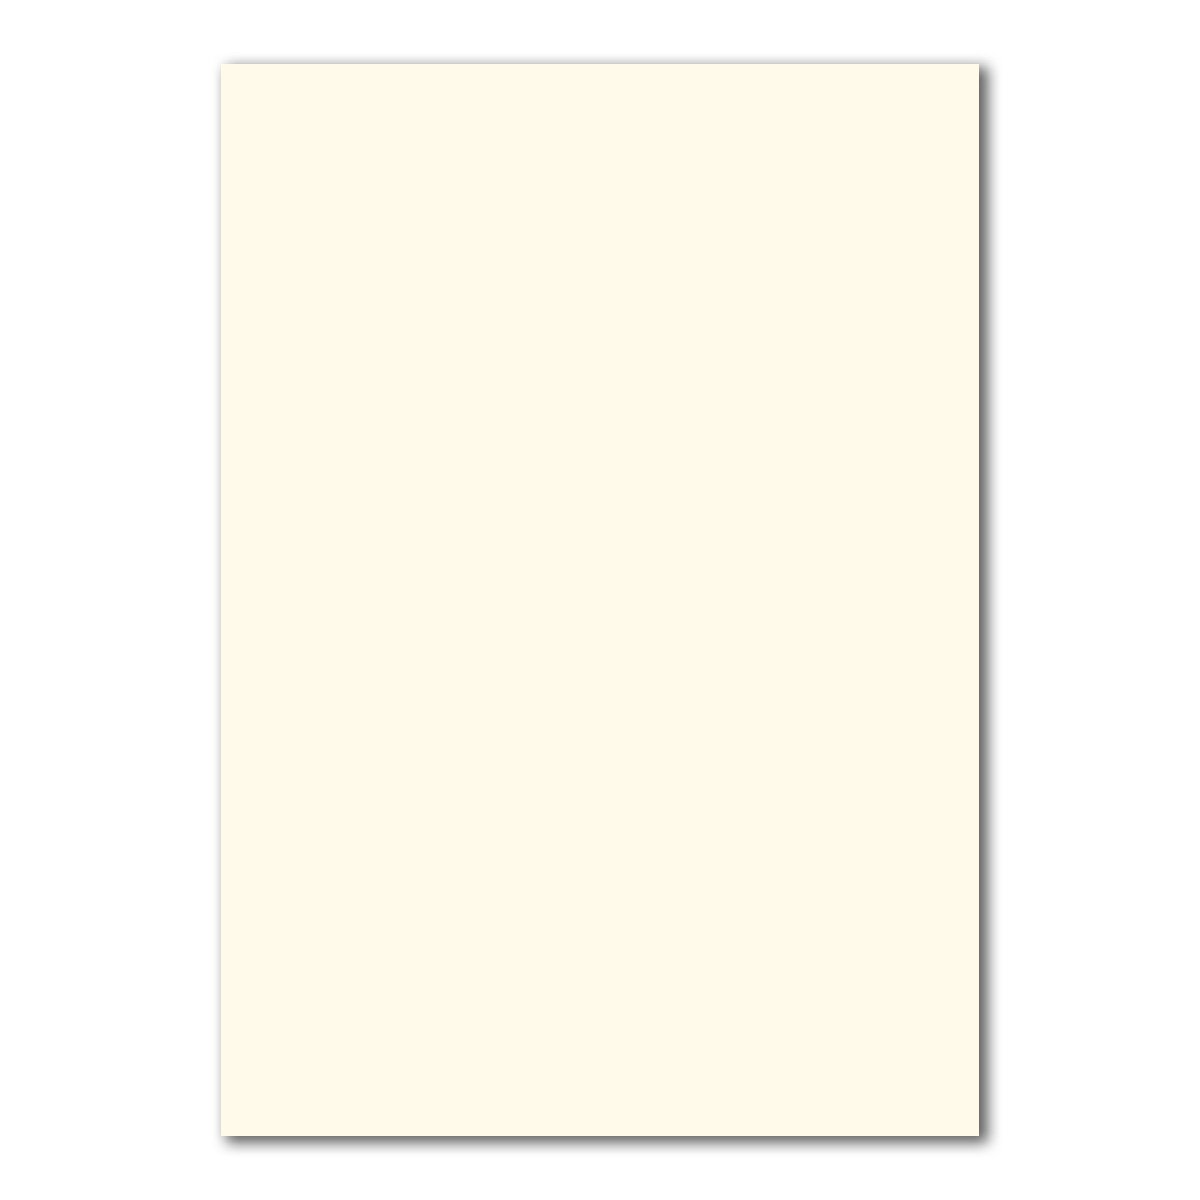 200 DIN A4 Papier-bögen Planobogen - Naturweiß (Weiß) - 240 g/m² - 21 x 29,7 cm - Bastelbogen Ton-Papier Fotokarton Bastel-Papier Ton-Karton - FarbenFroh